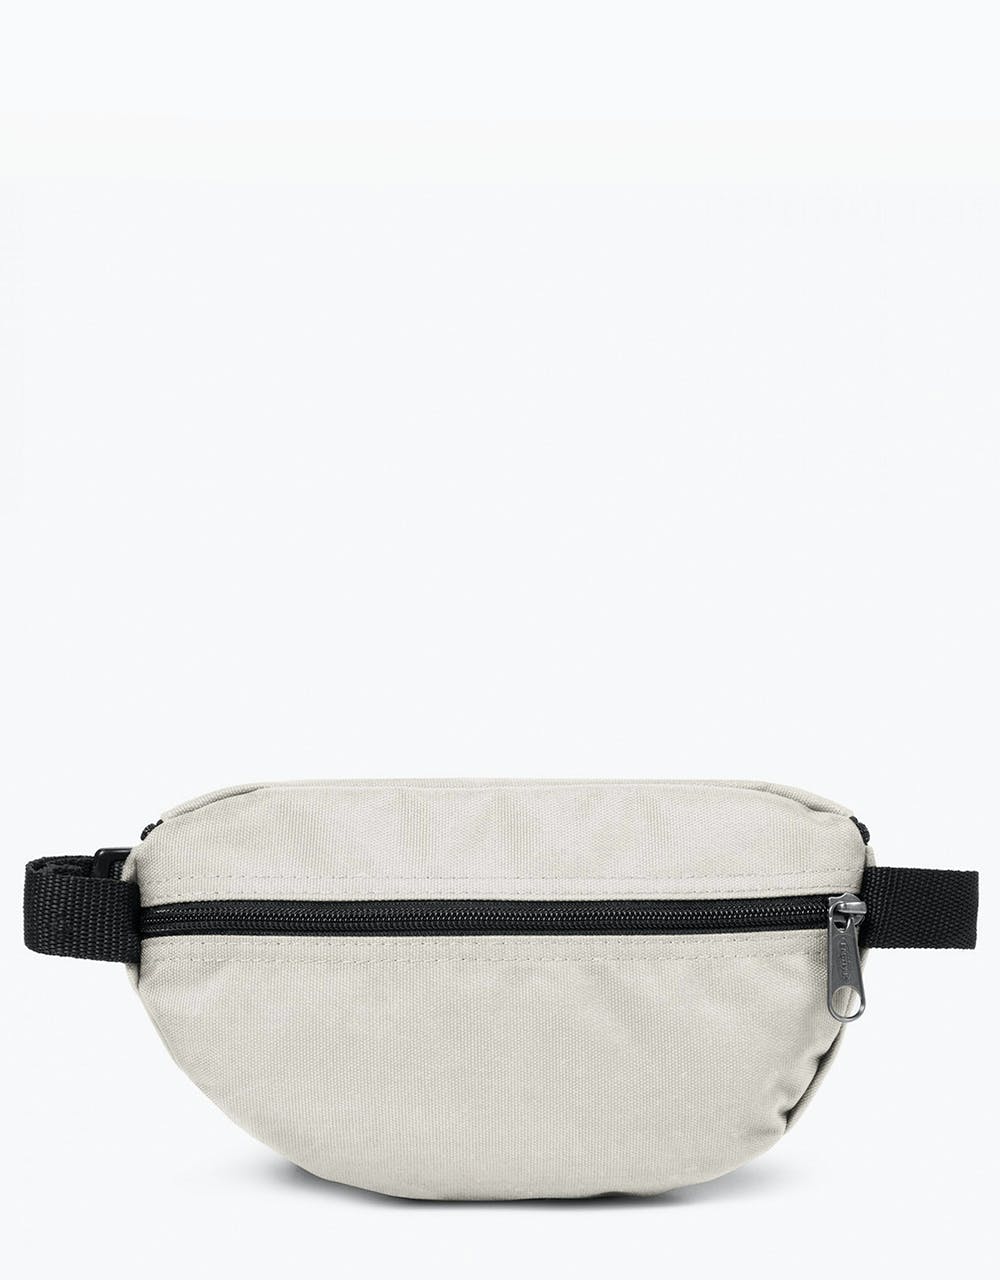 Eastpak Springer Cross Body Bag - Pearl White